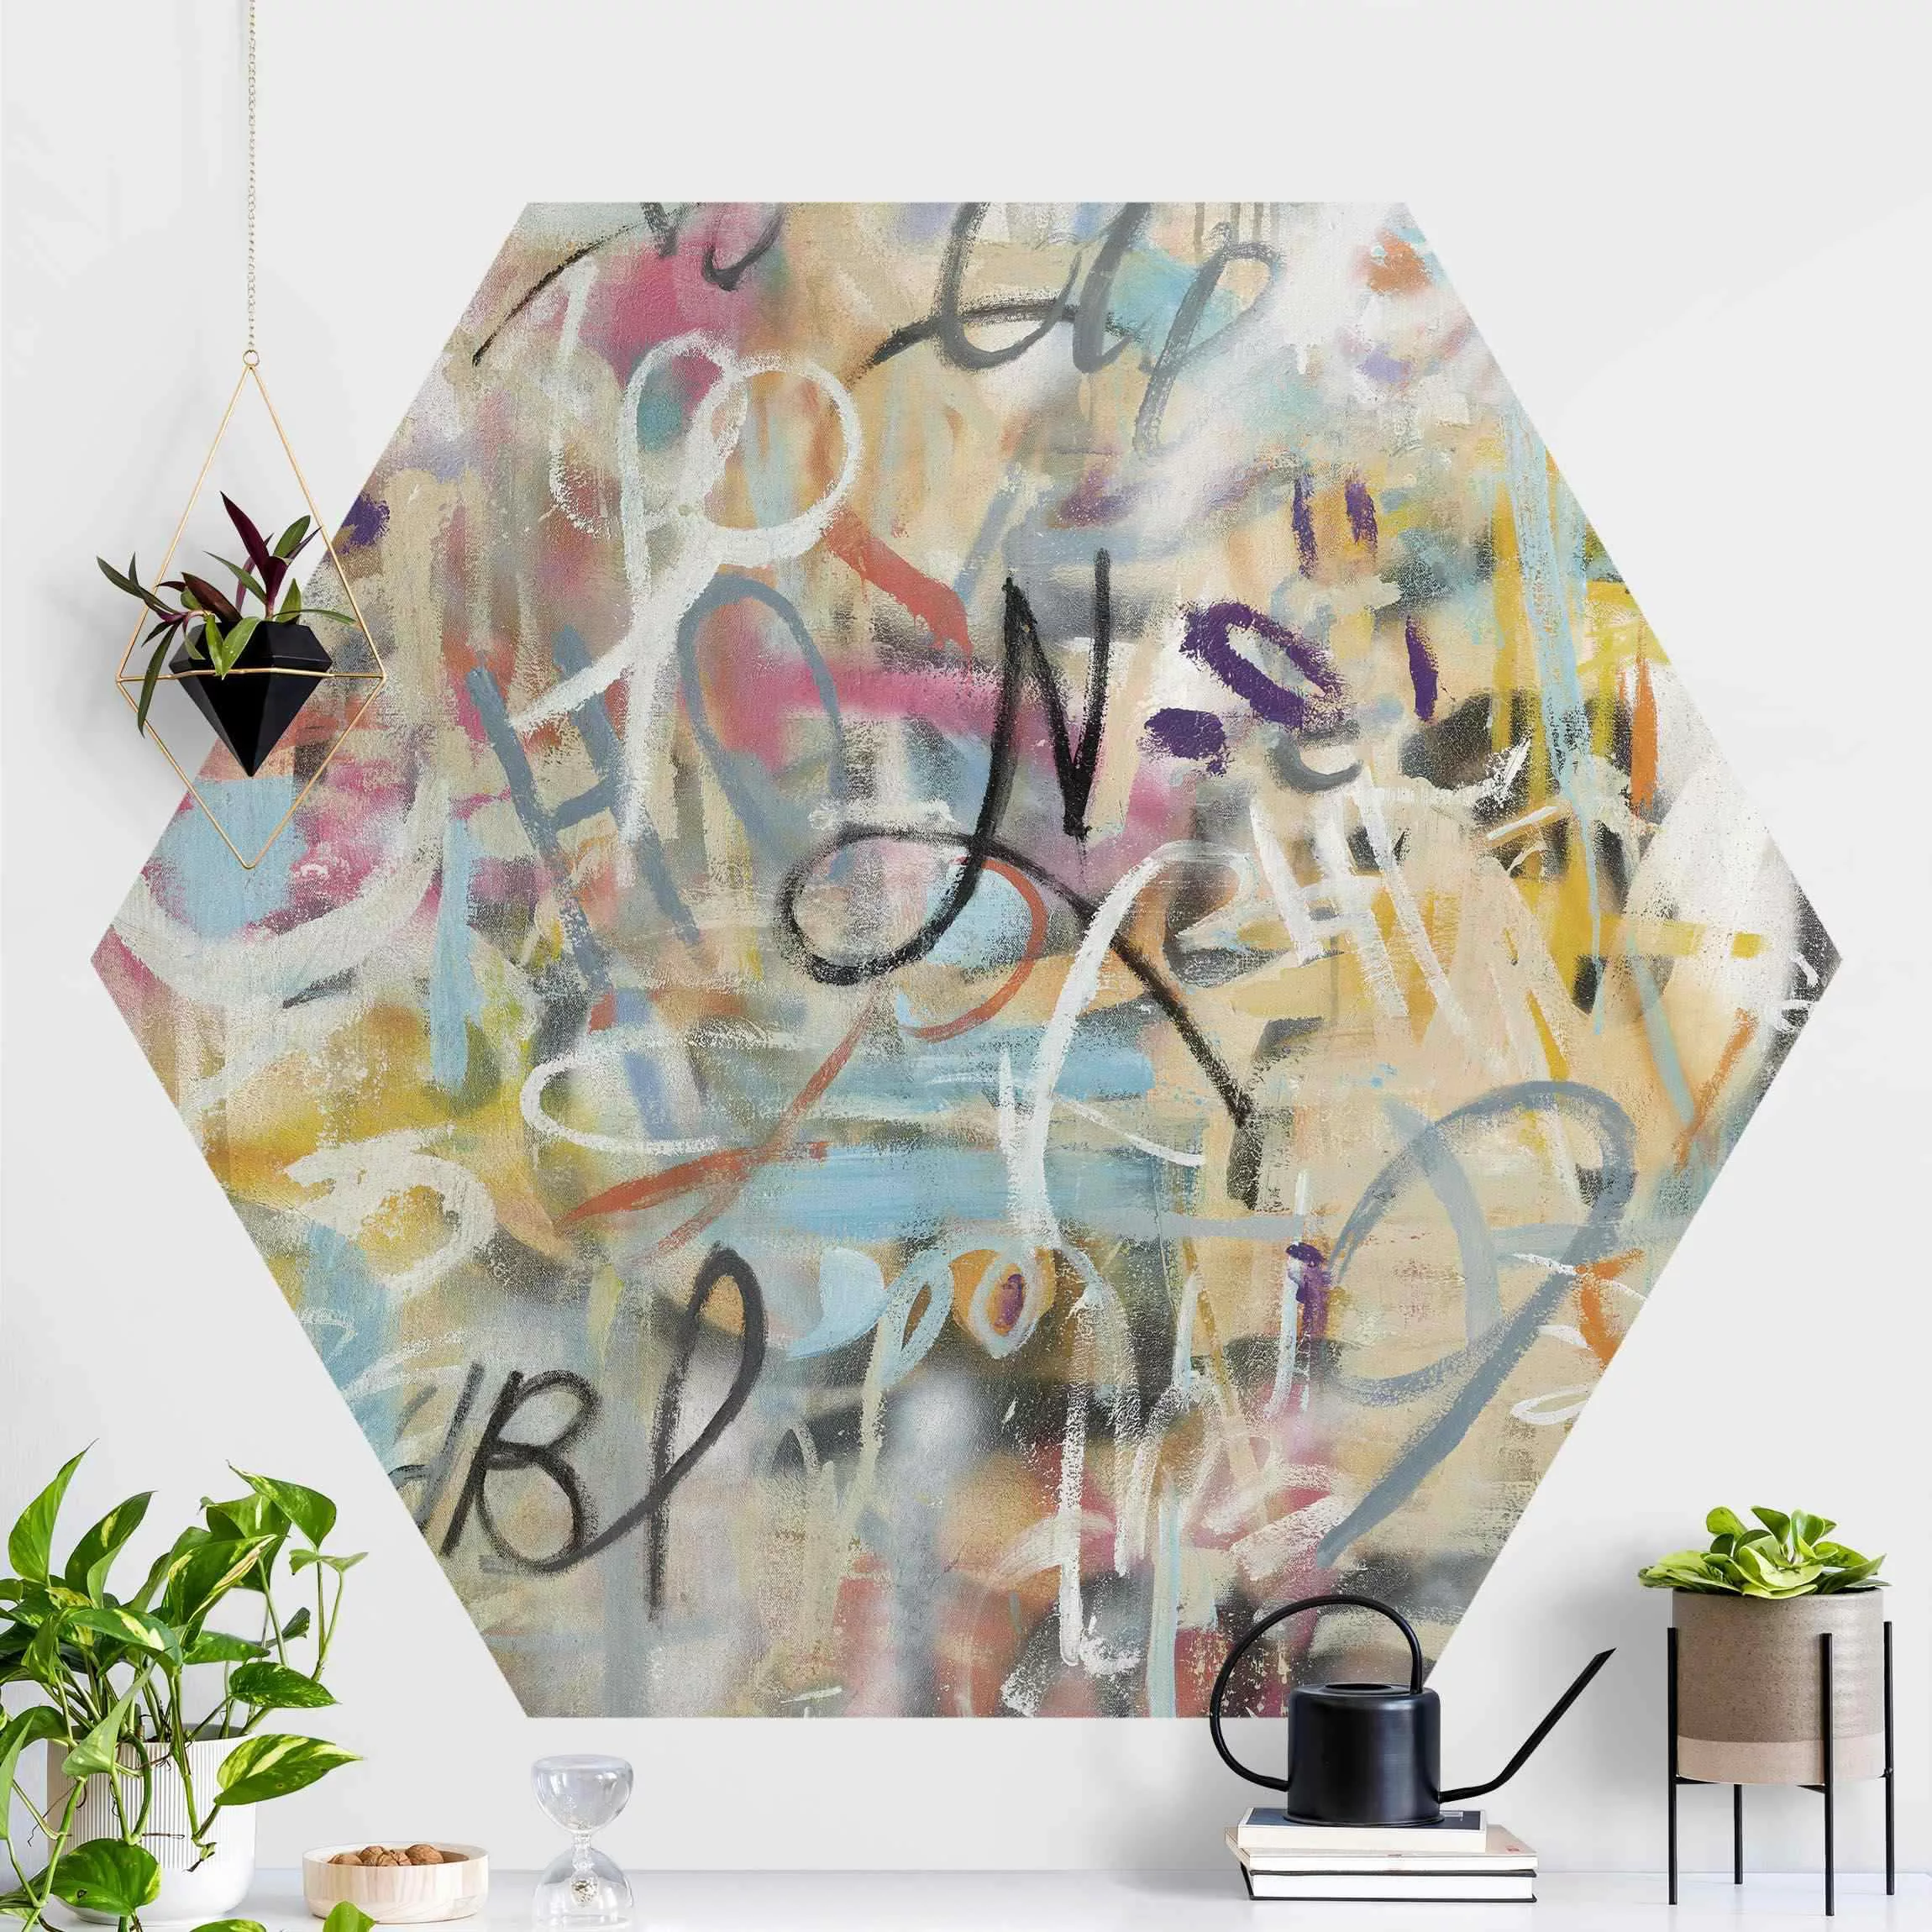 Hexagon Mustertapete selbstklebend Graffiti Freedom in Pastell günstig online kaufen